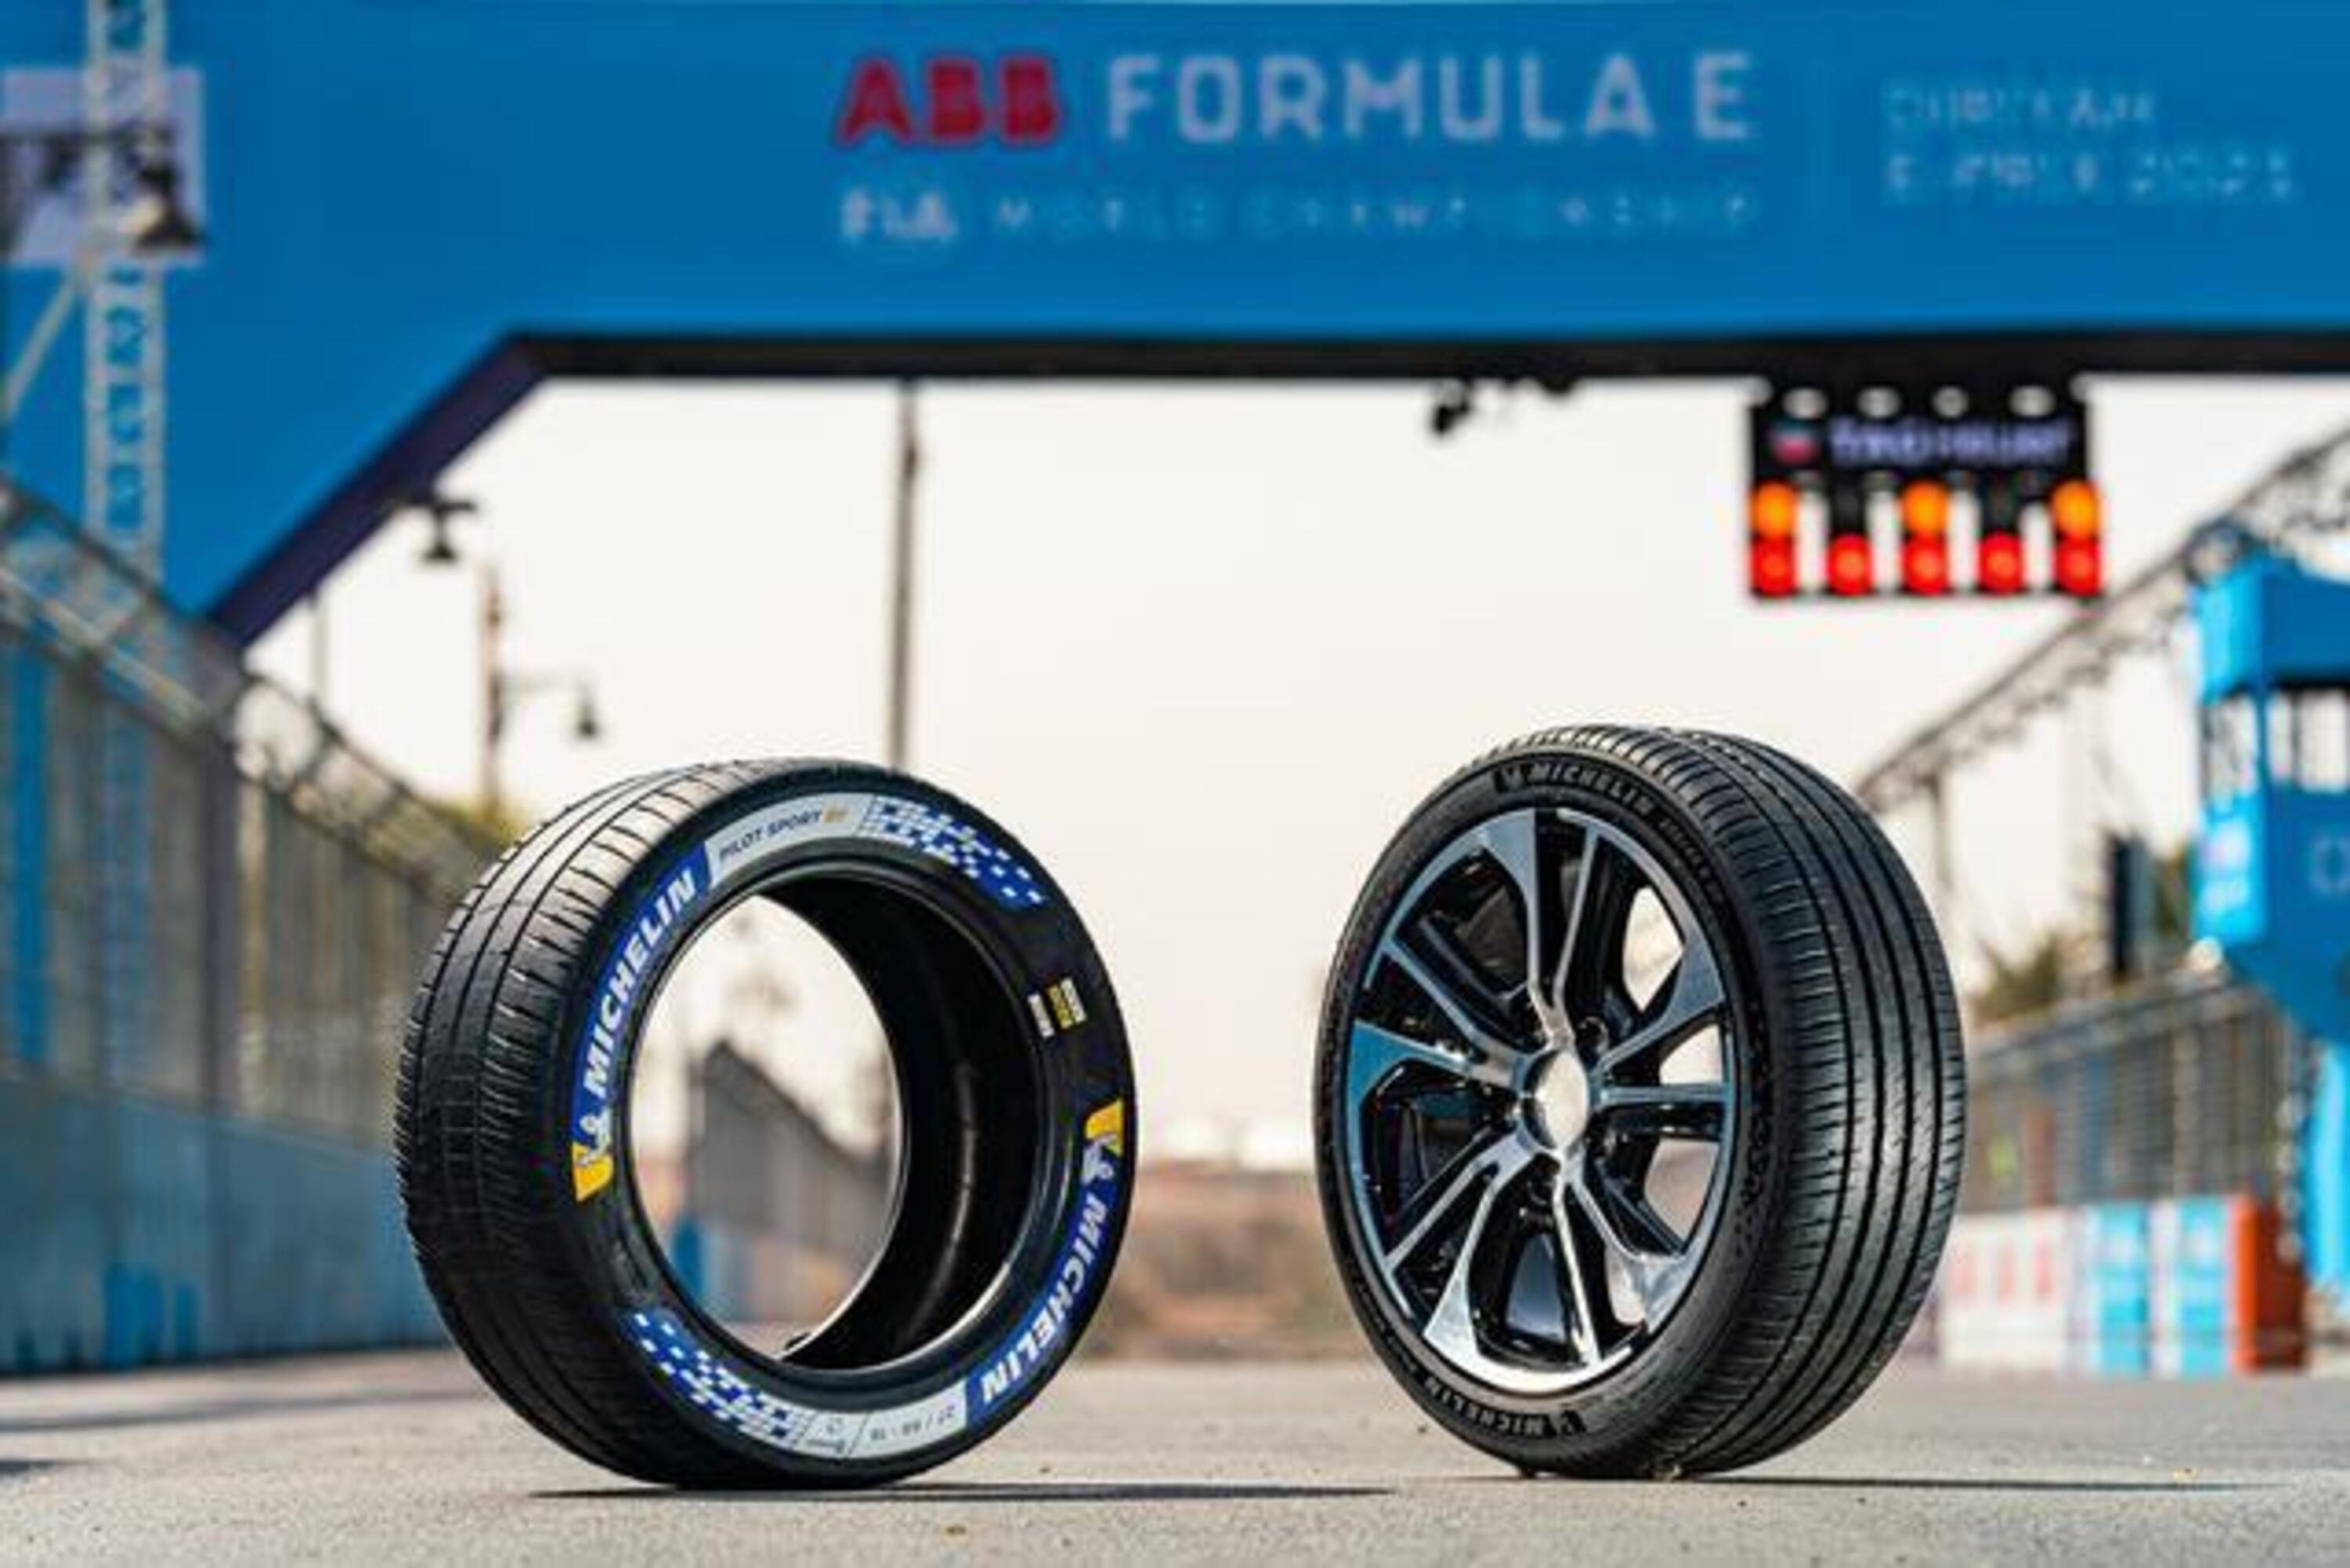 La nuova gommatura Michelin per le supercar e sportive elettriche: Pilot Sport EV